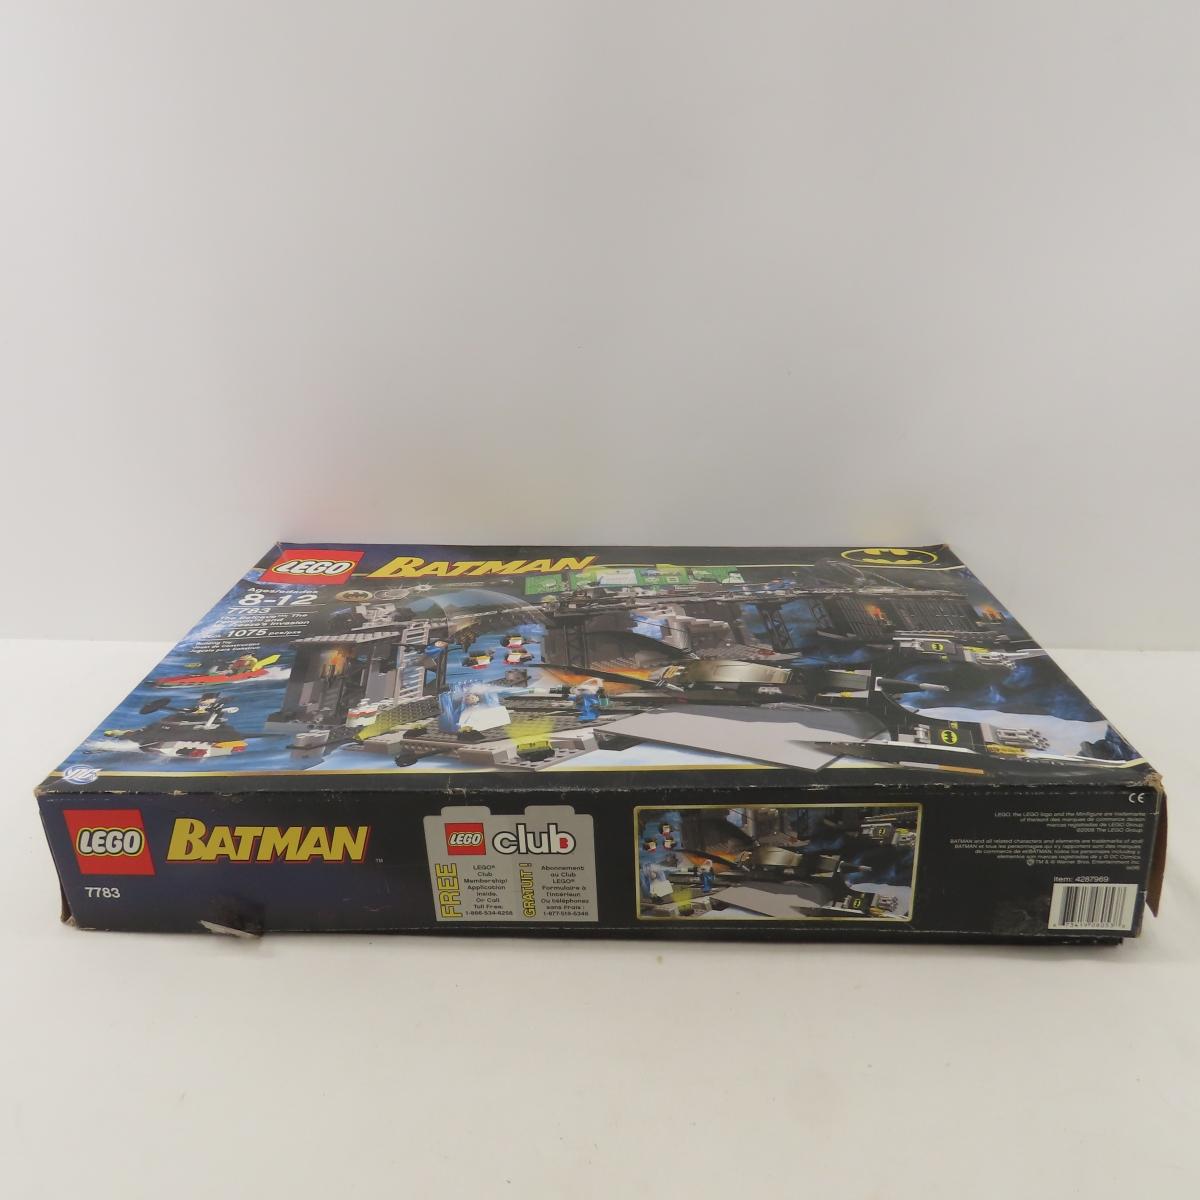 Lego Batman 7783 set in open box